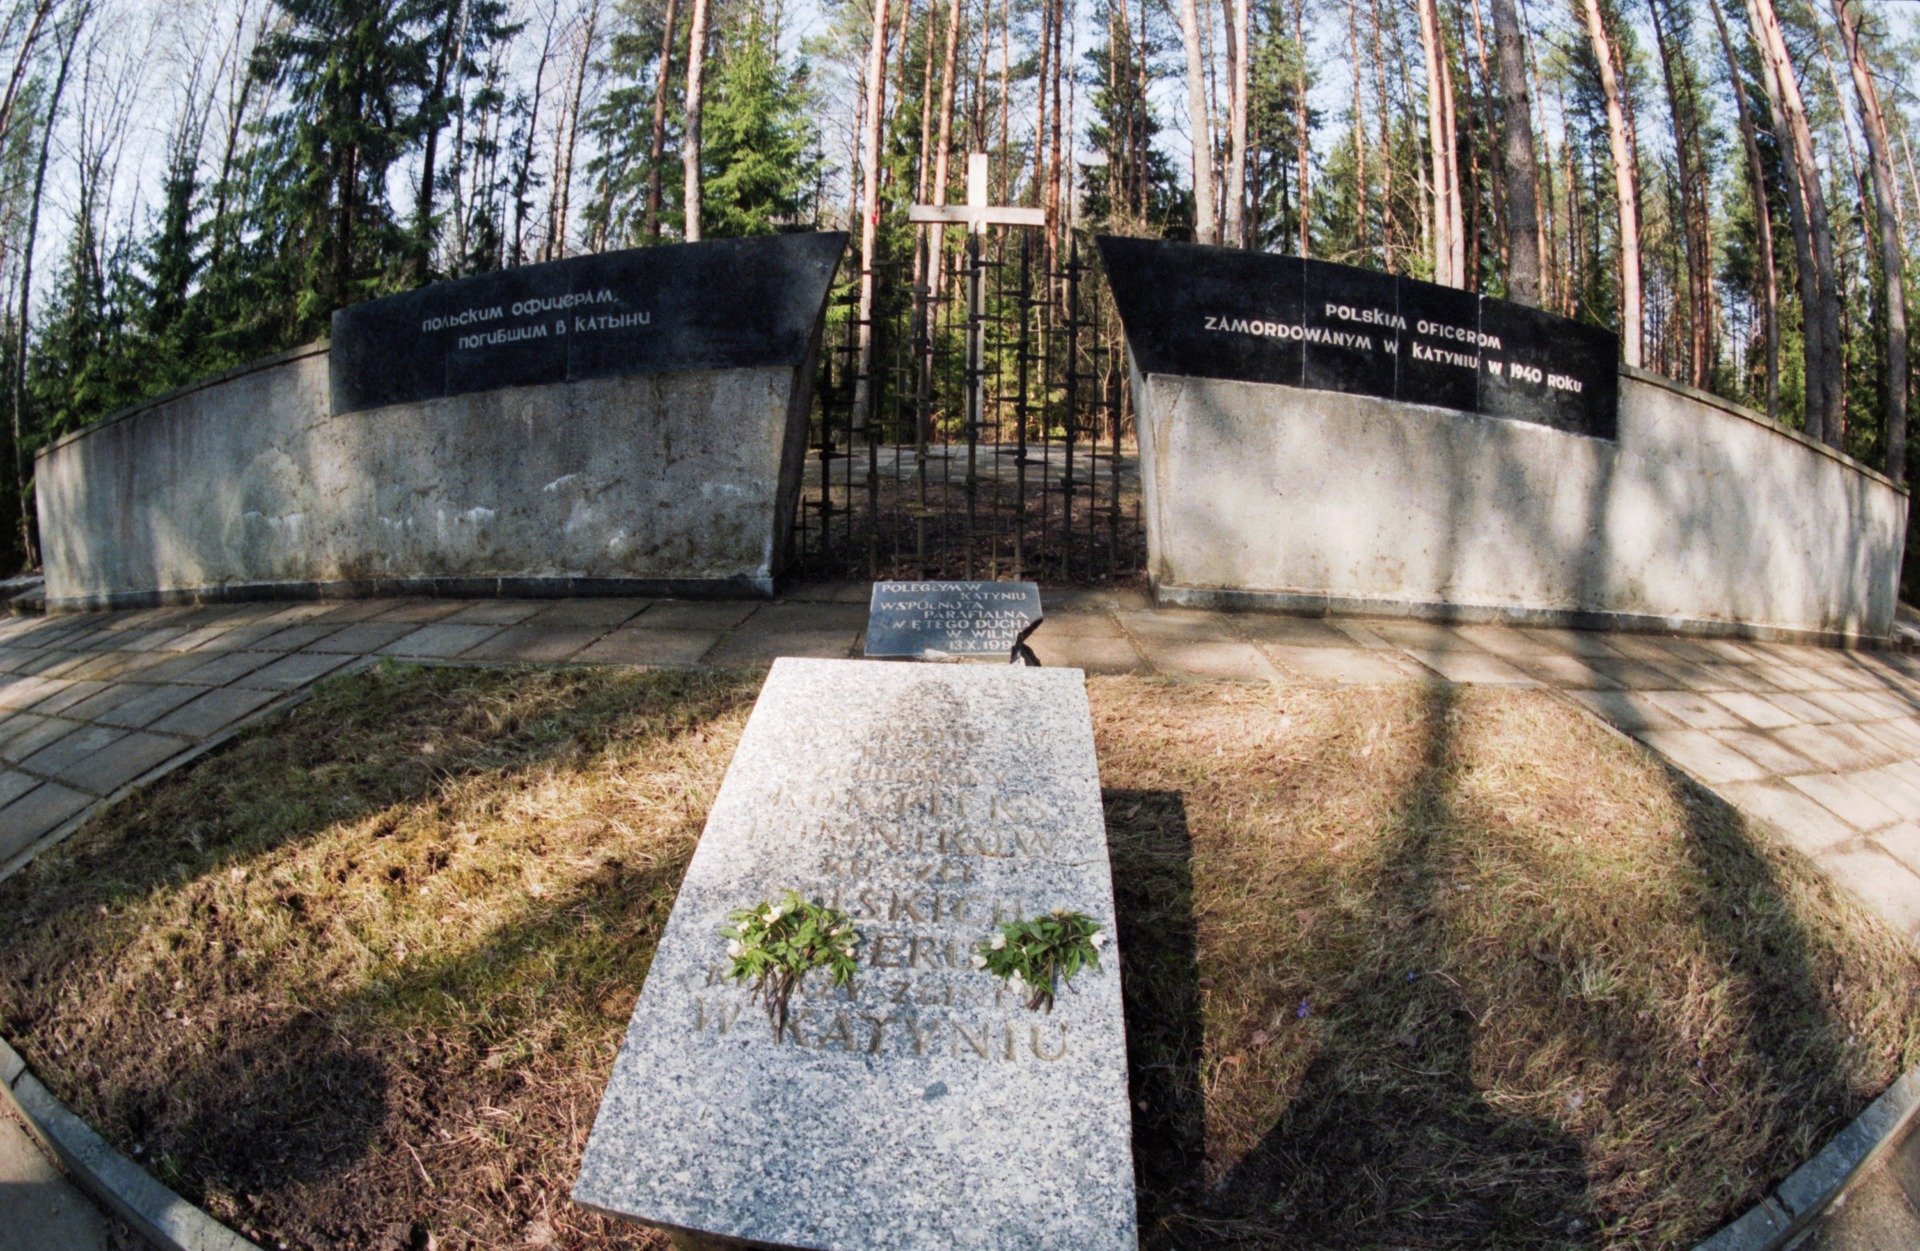 Мемориал польским офицерам, погибшим в Катыни в 1940 году. Фото: Борис Кавашкин / Фотохроника ТАСС